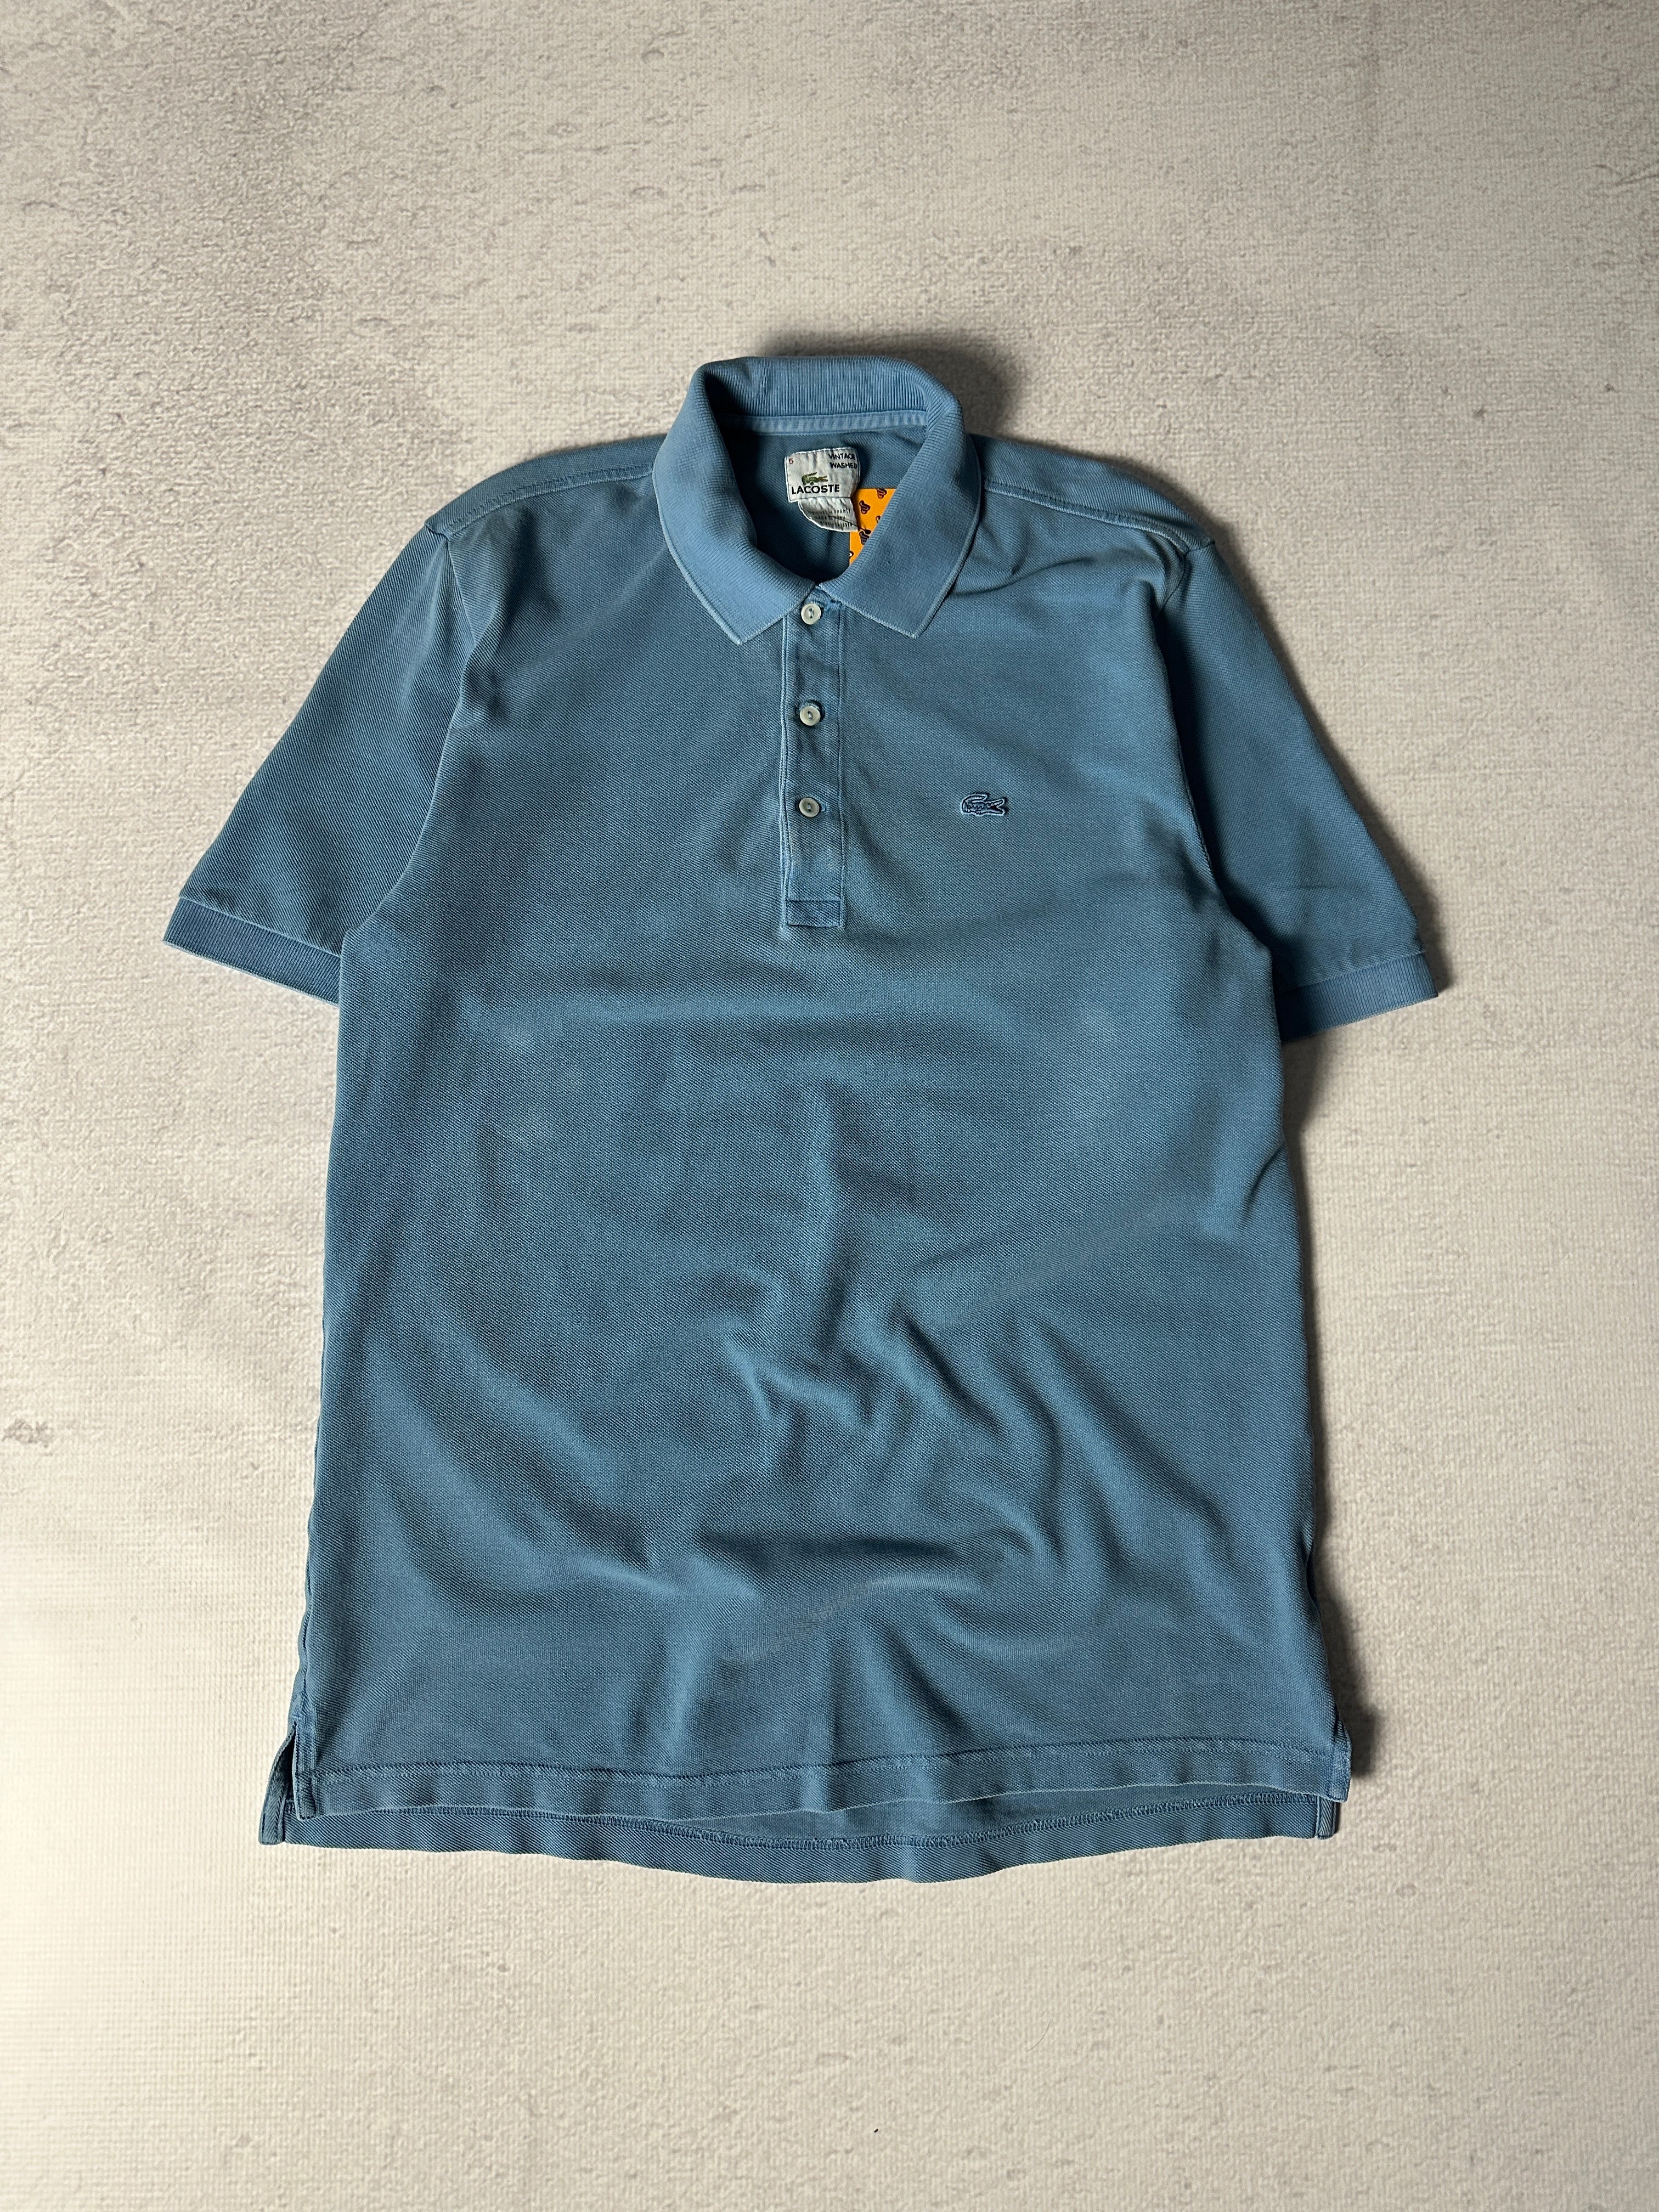 Vintage Lacoste Polo Shirt - Men's Large